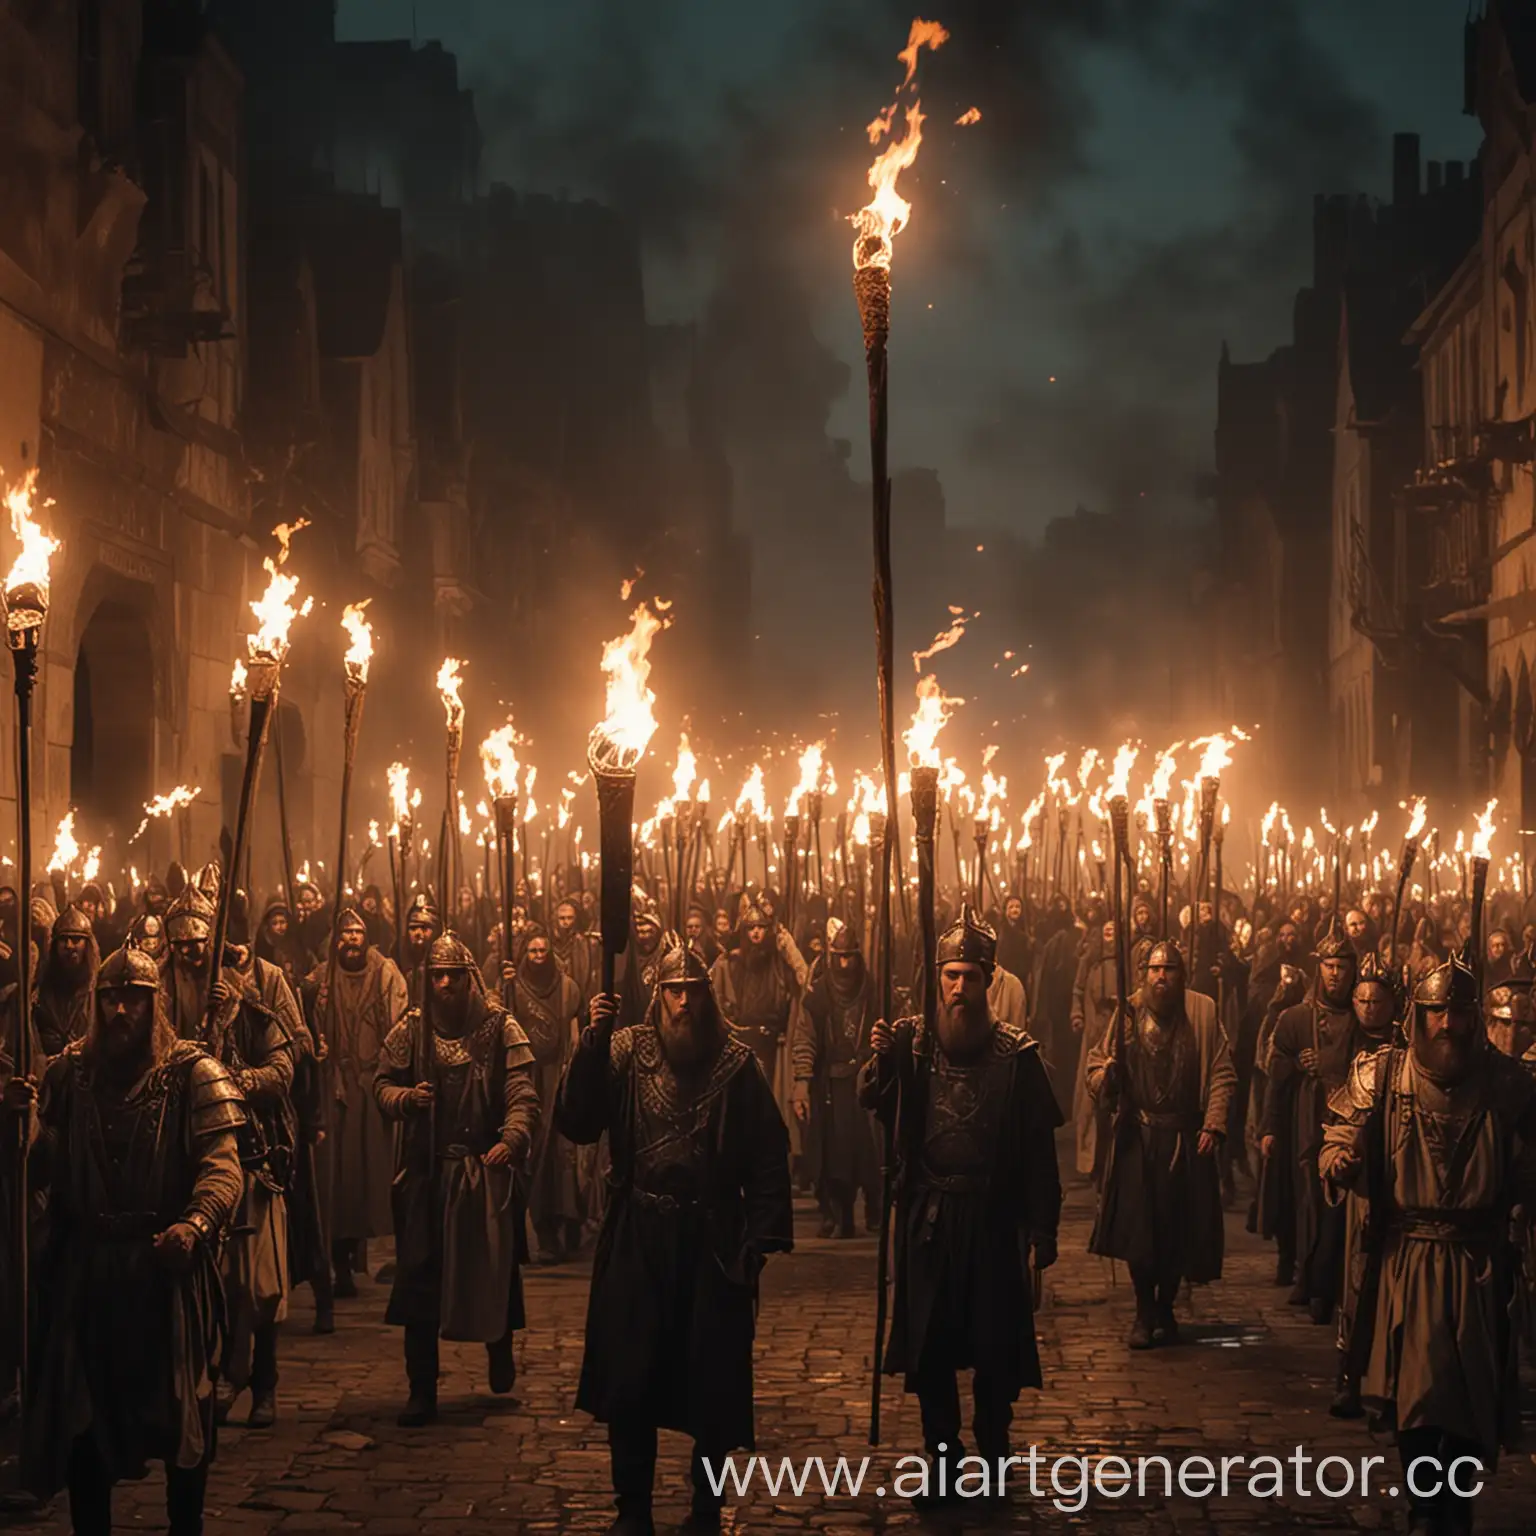 факельное шествие в ночи сынов зари идущих на свержение тирана 